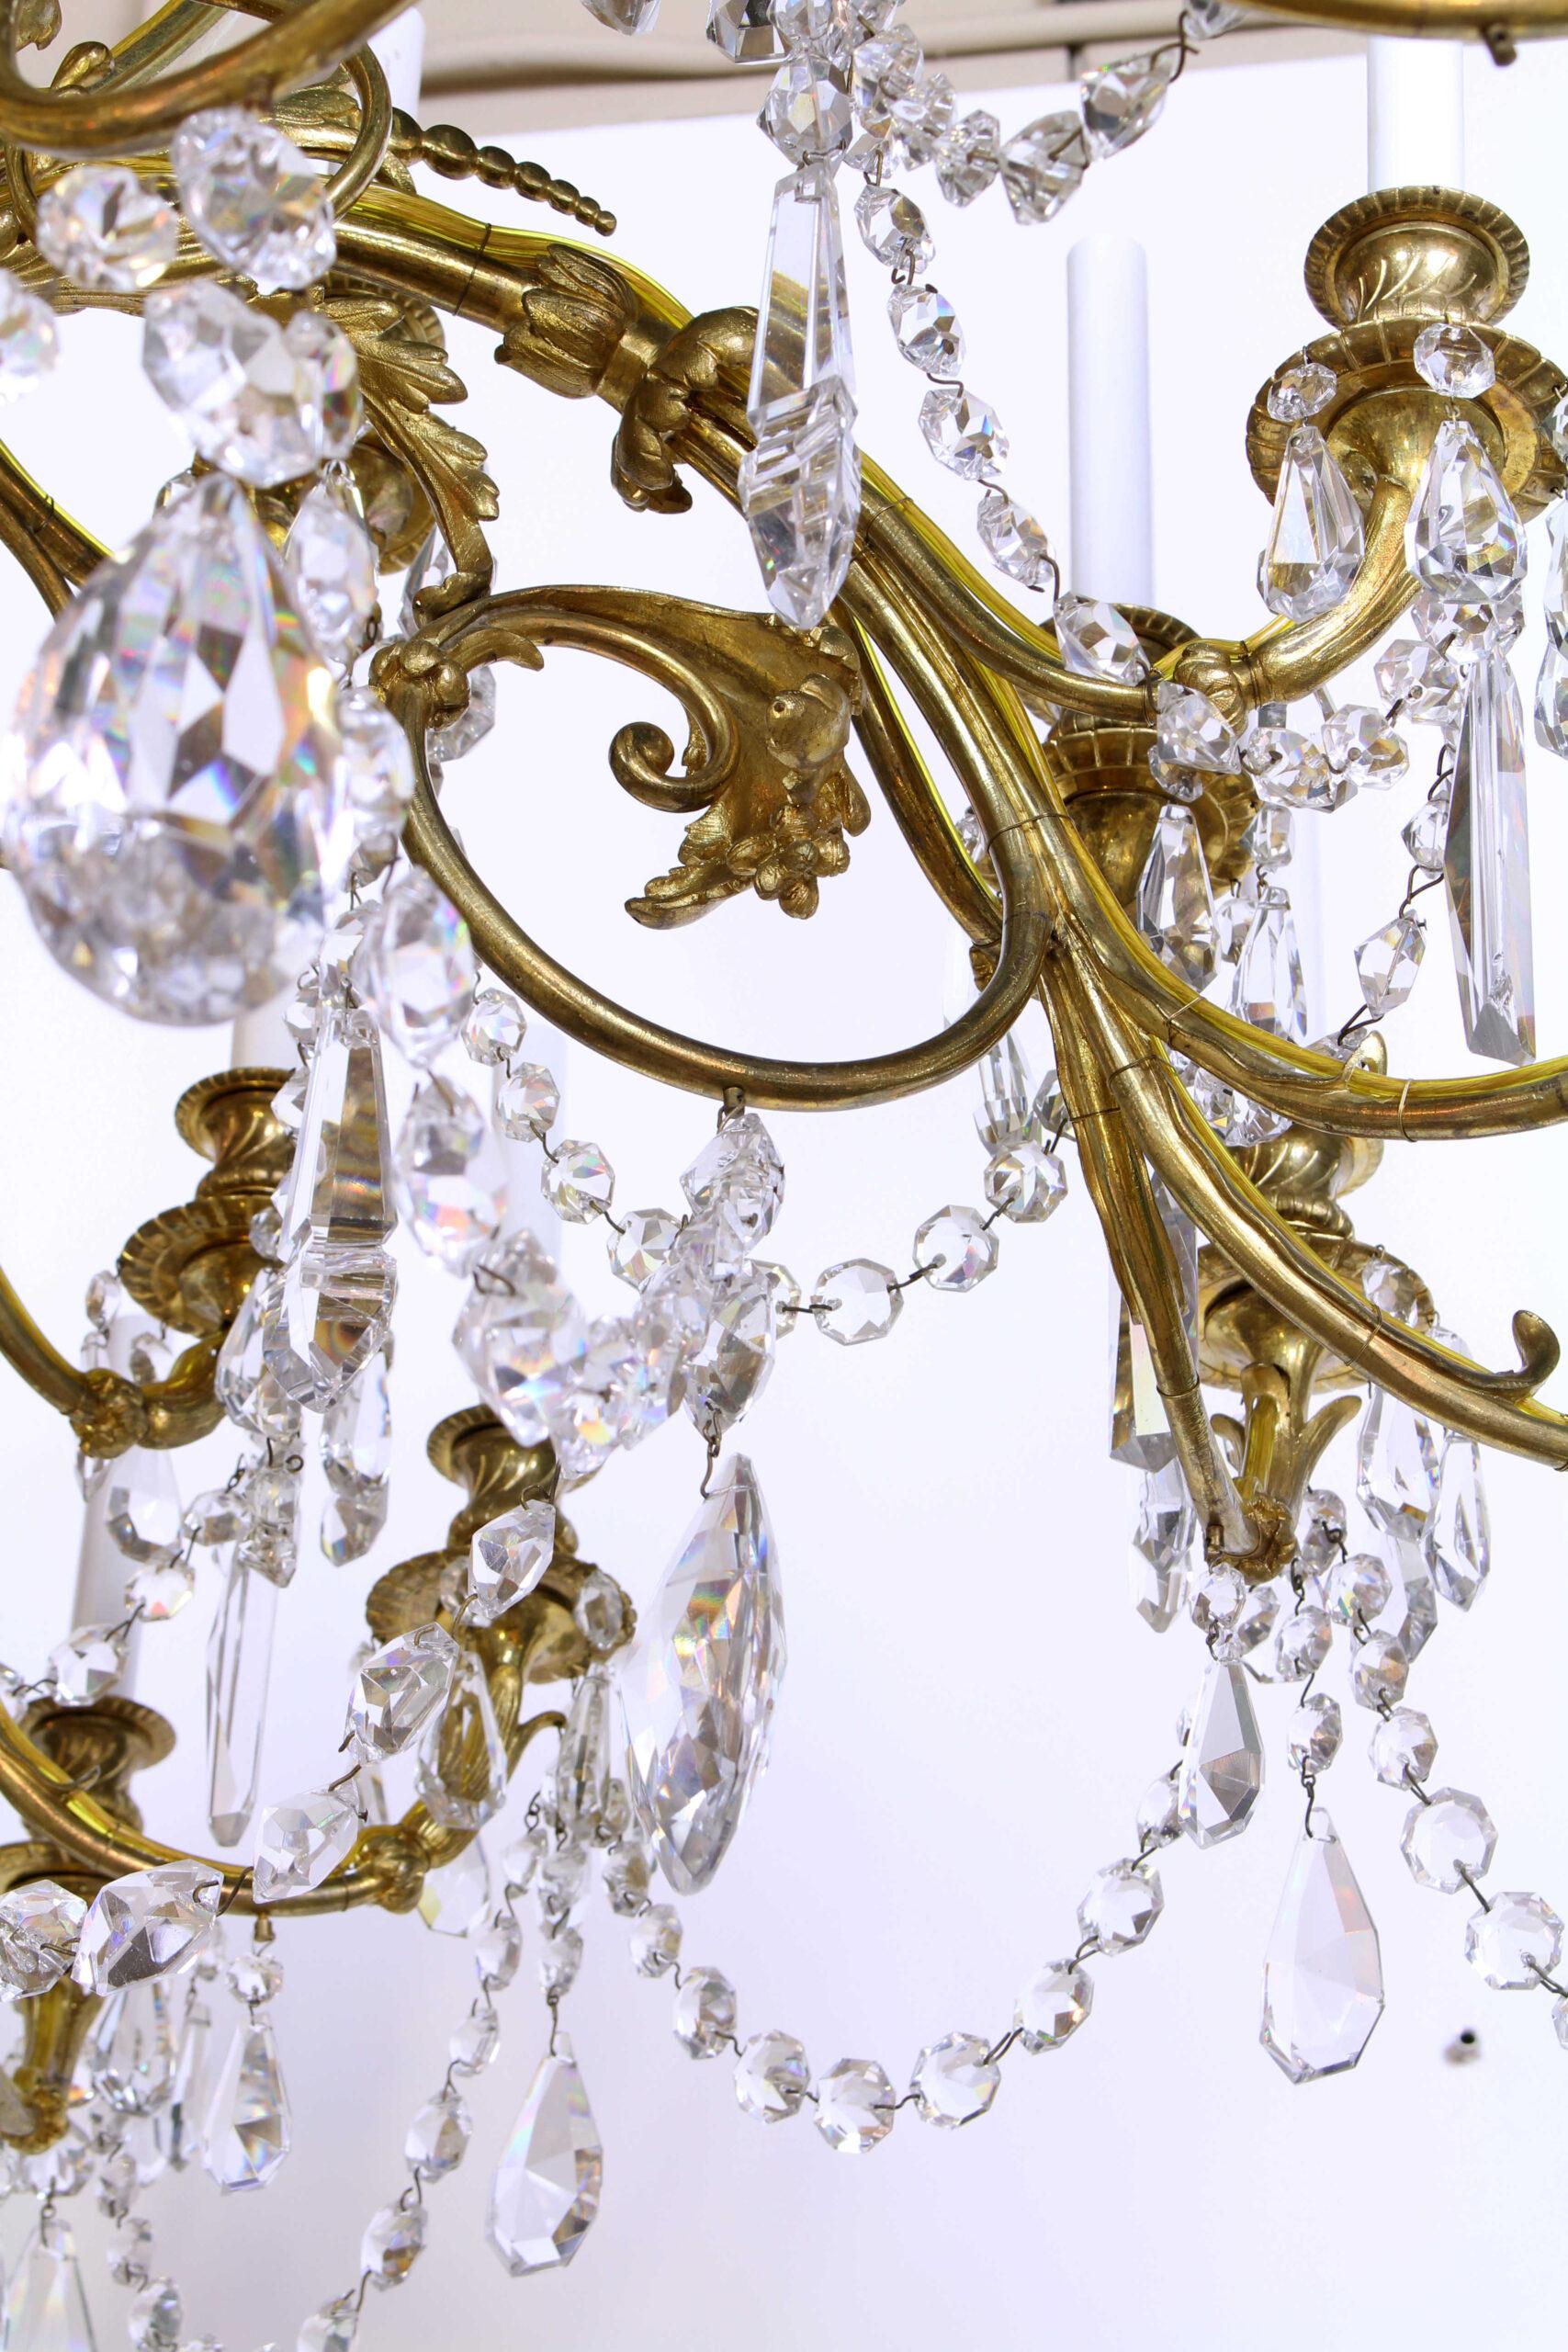 Un magnifique lustre en bronze doré et cristal de la fin du 19ème siècle. 36 lampes montées sur des bras courbes et feuillus alternés. La tige centrale présente un motif de clé grecque que l'on retrouve sur certains lustres Baccarat de style